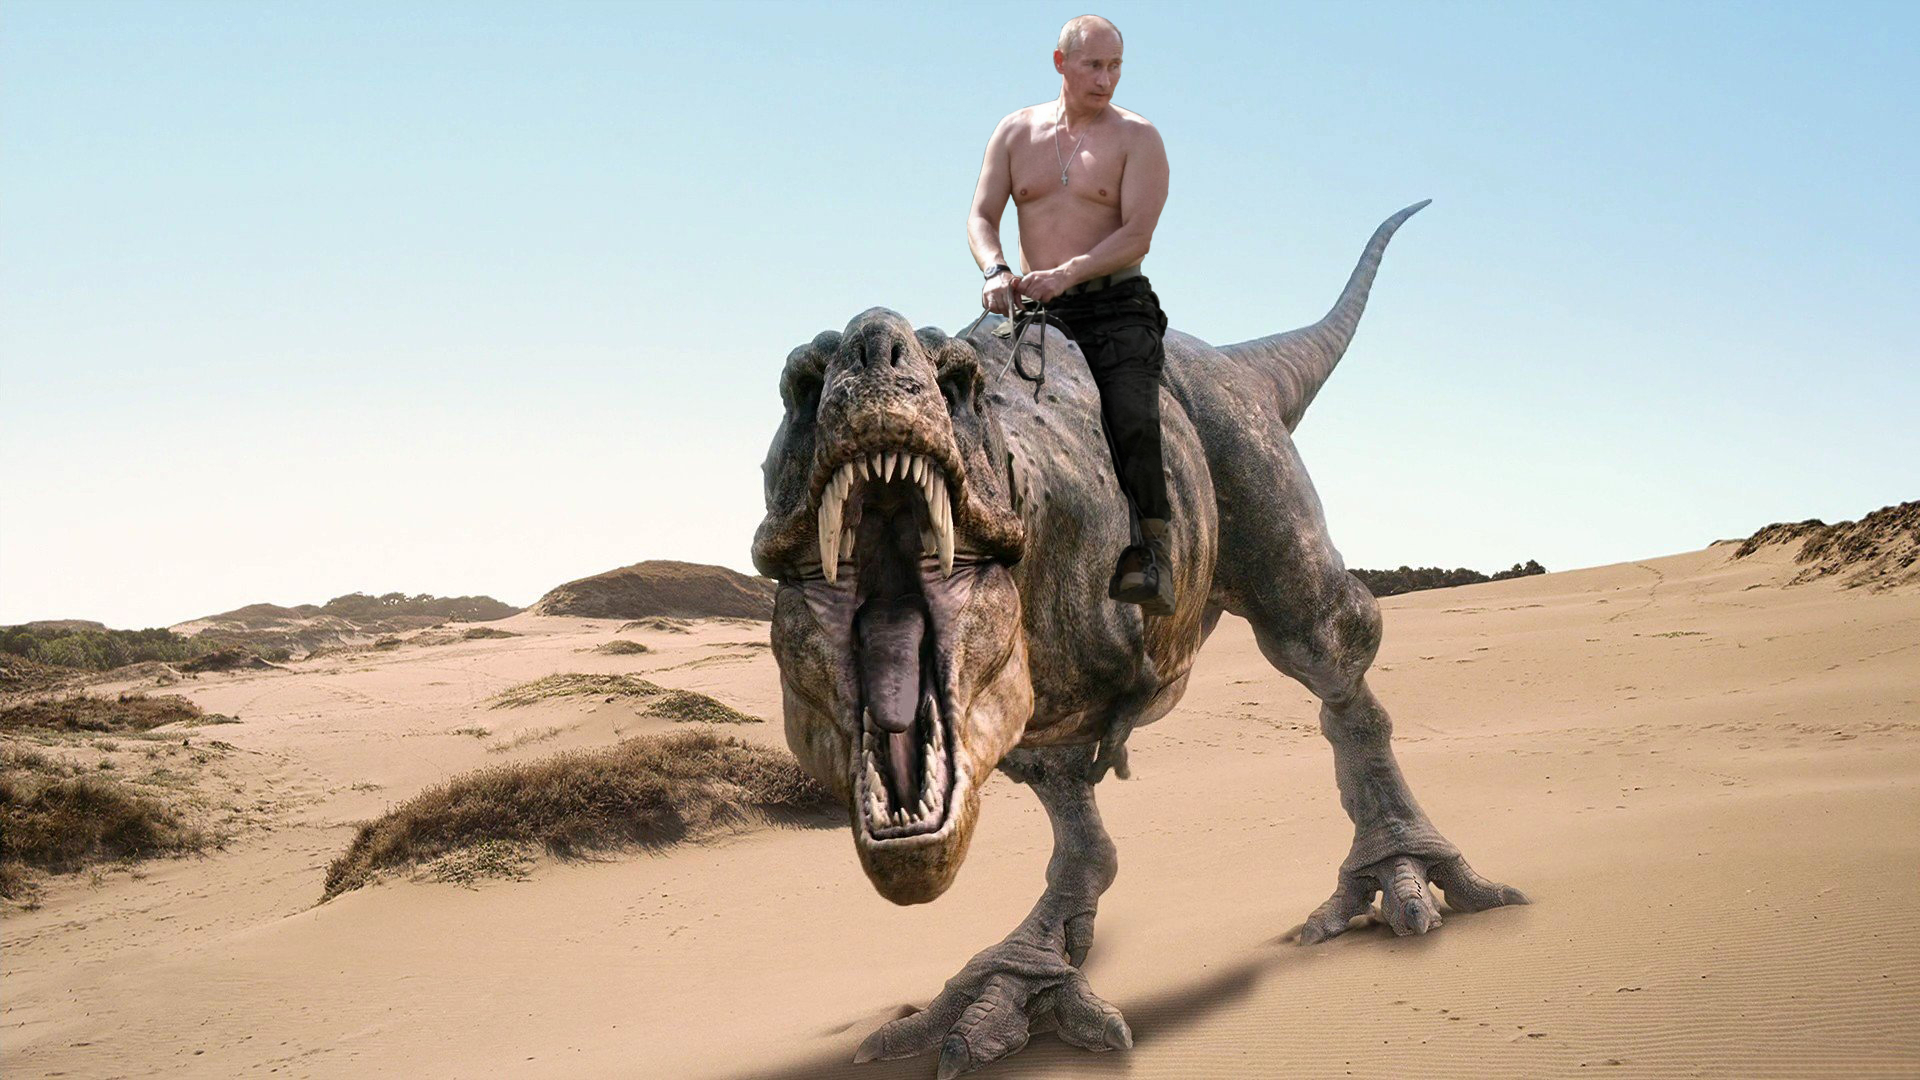 Vladimir Poutine Sur Son Dinosaure Le Forum Blabla Ans